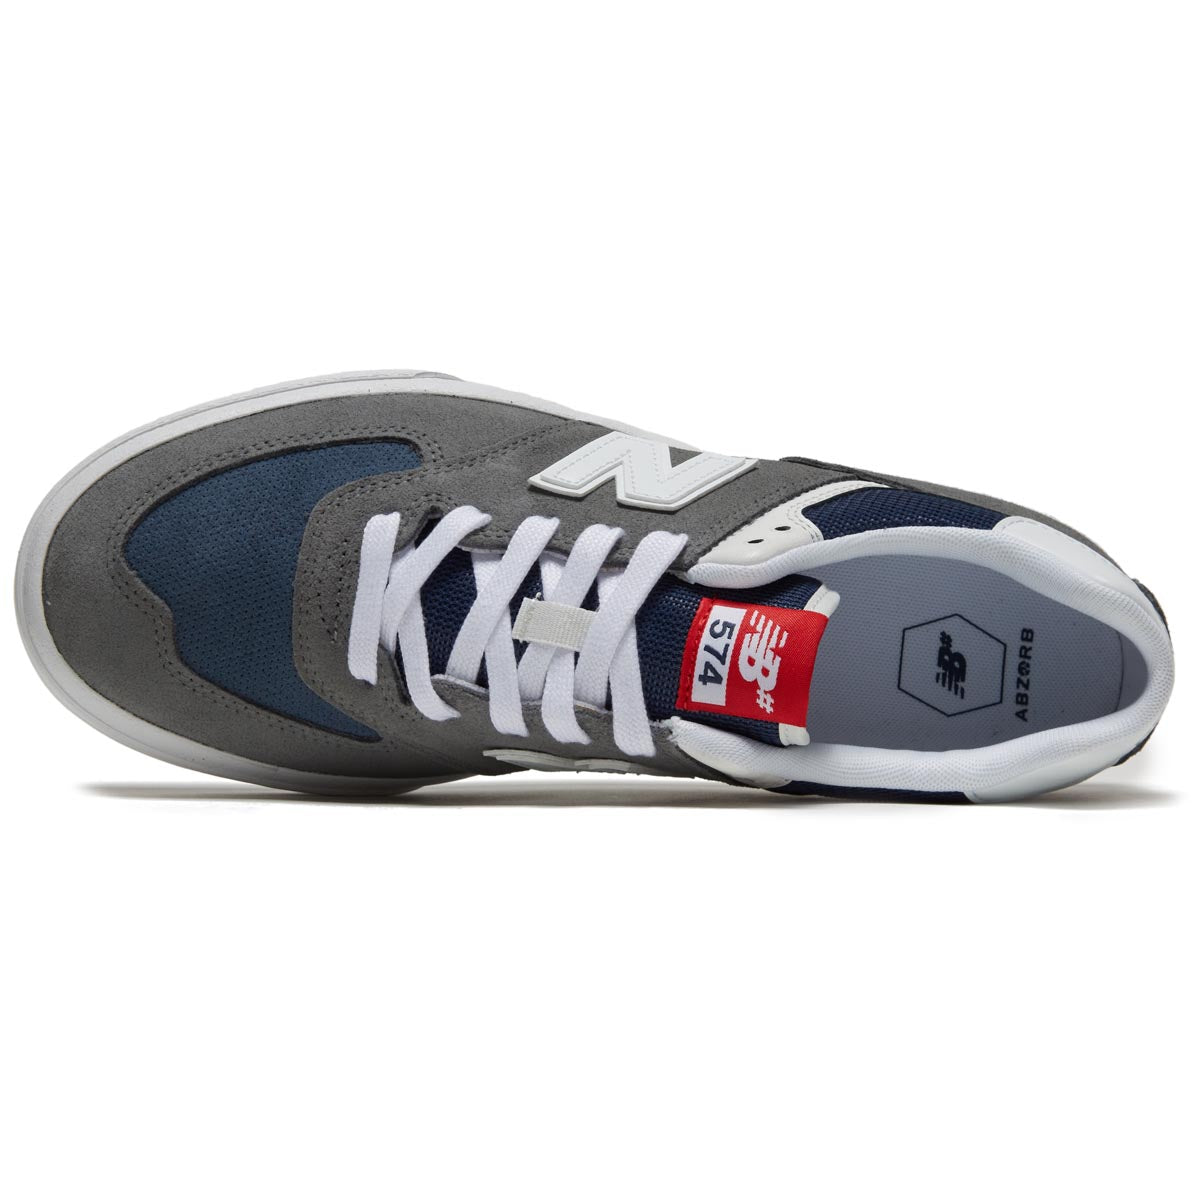 New Balance 574 Vulc Shoes - Grey/White image 3